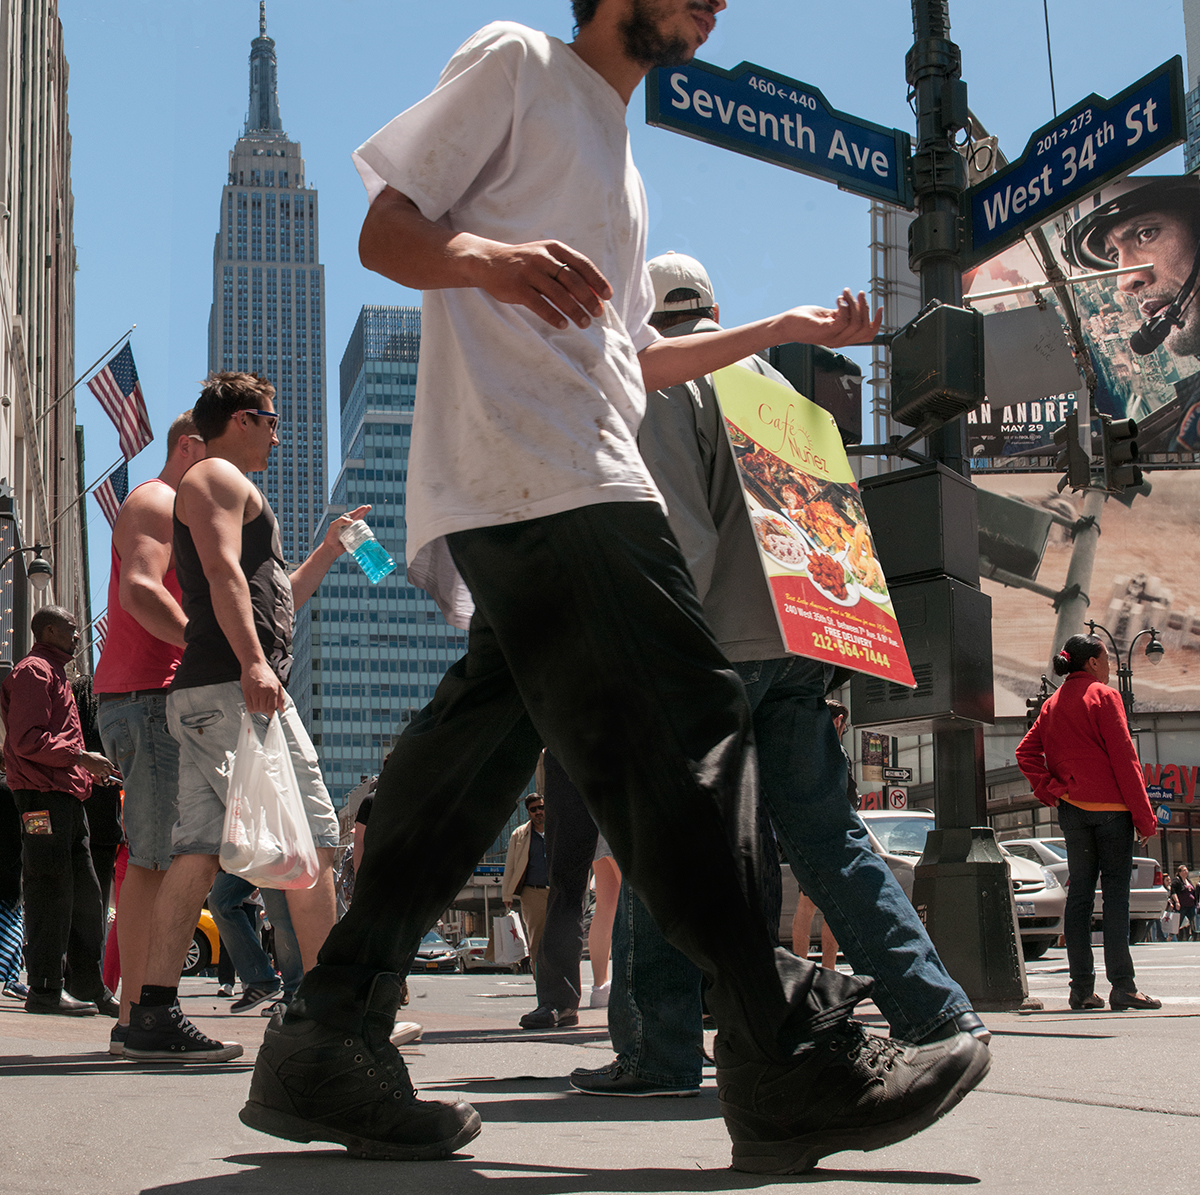 Adobe Portfolio new york city  street life  people   sidewalks crowded tourists  New Yorkers